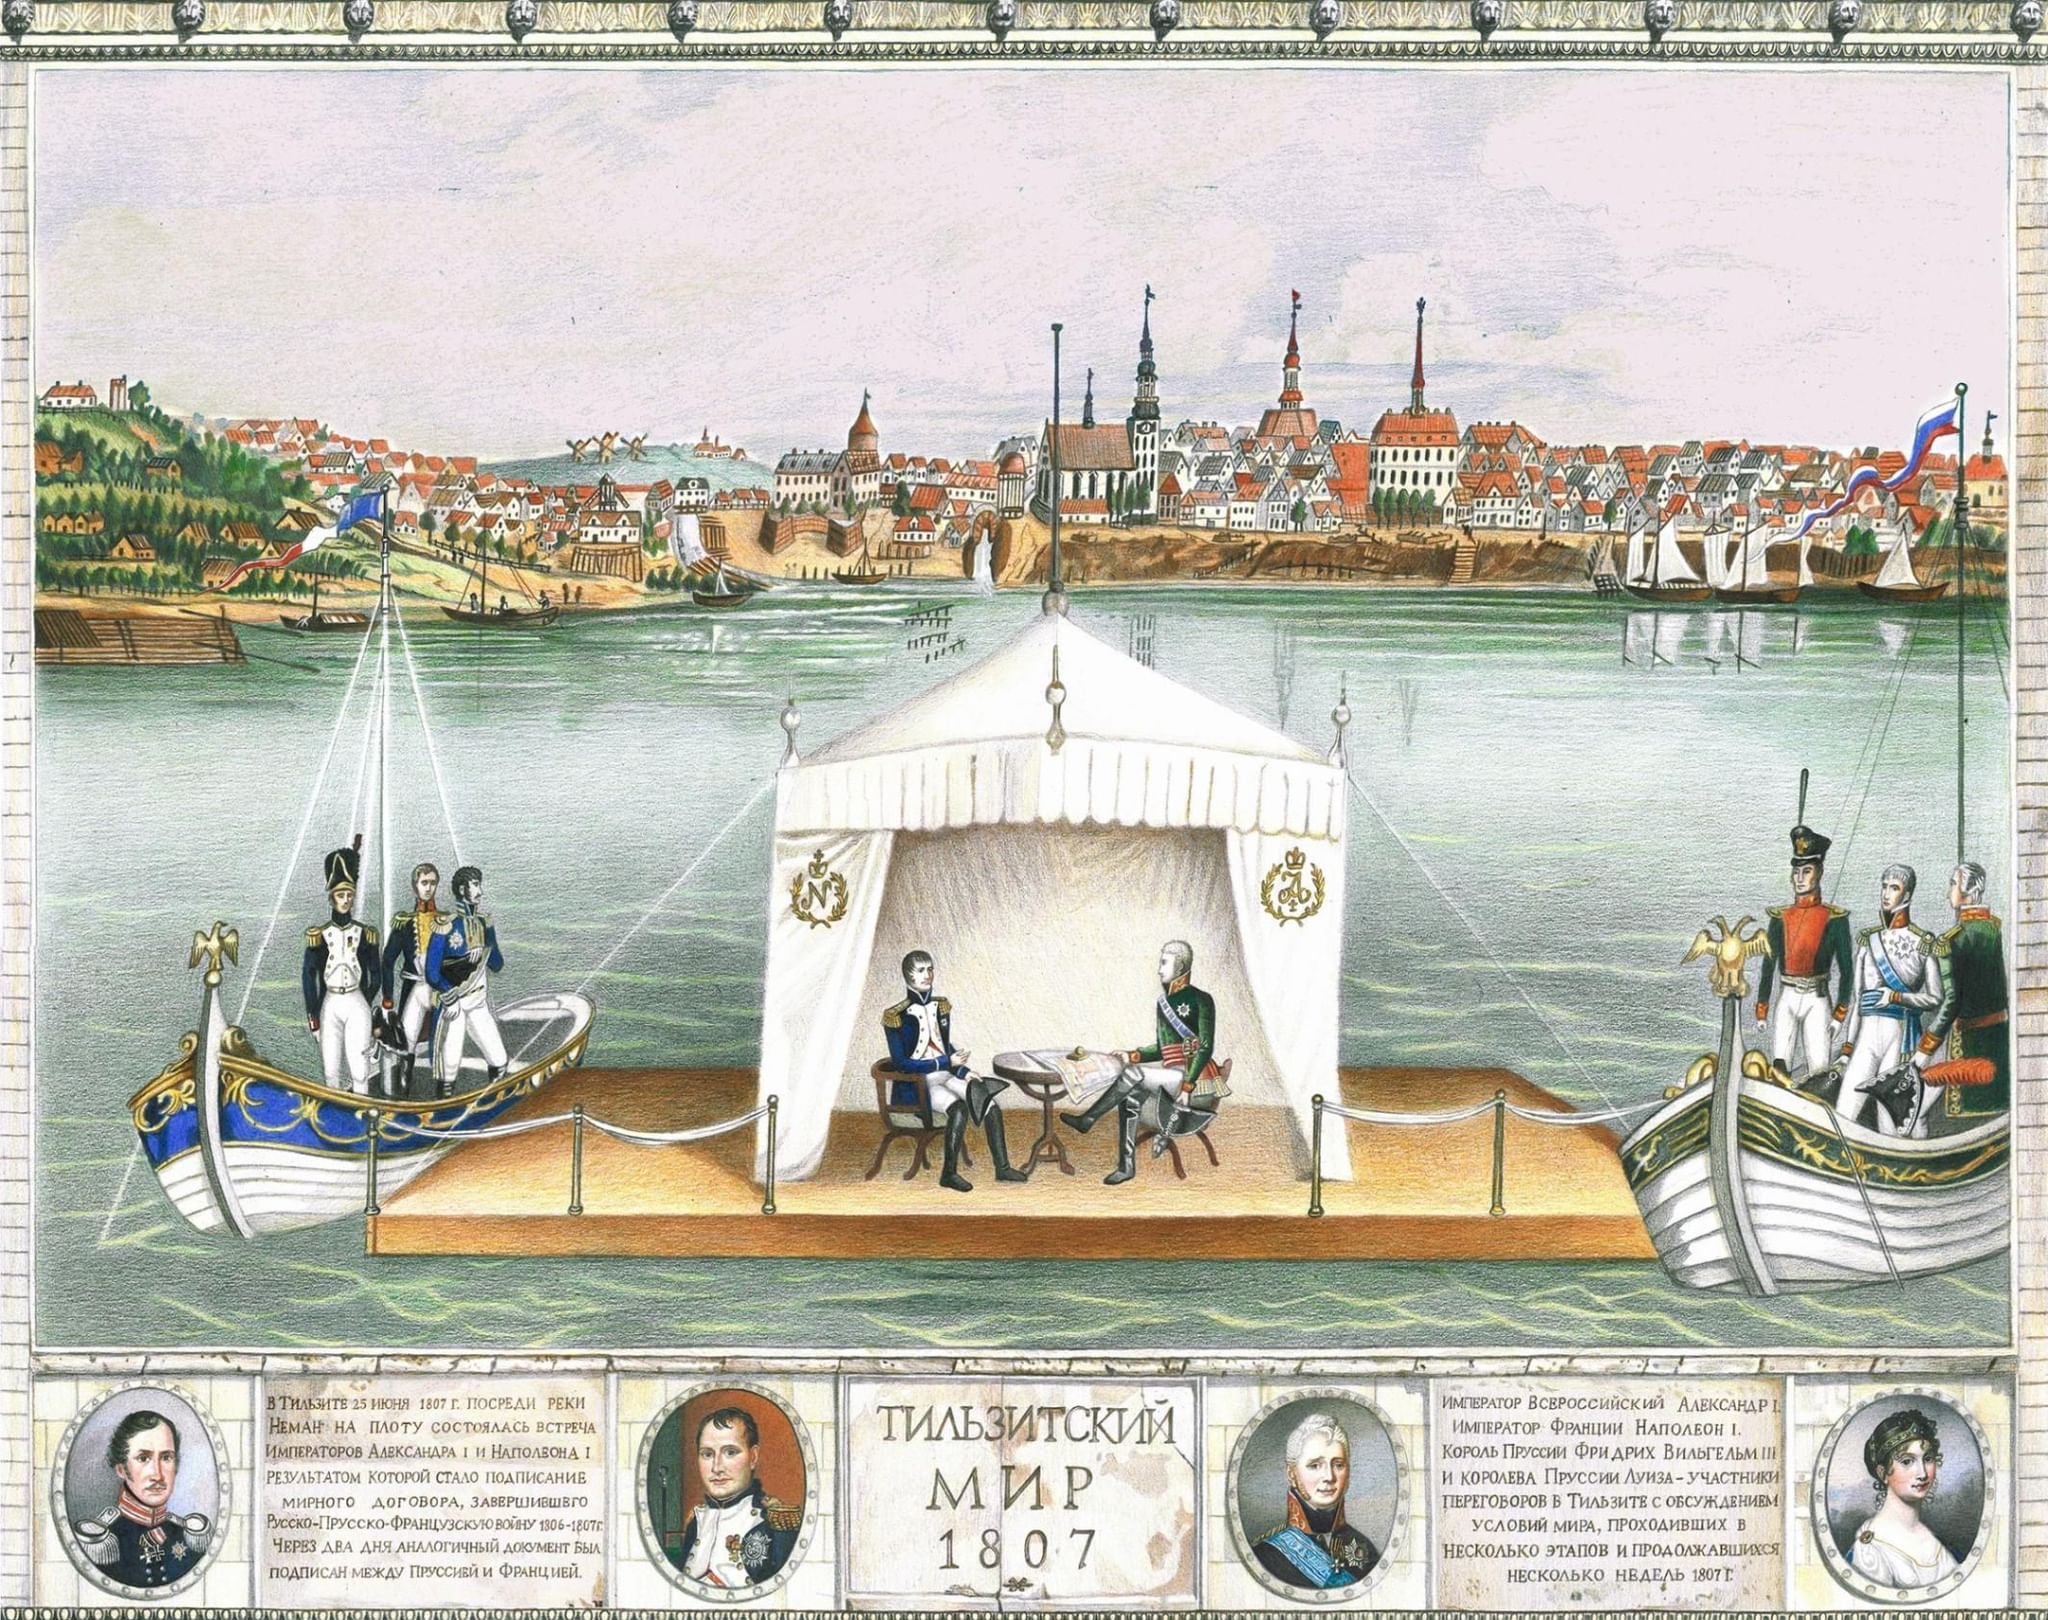 Тильзитский мир первая встреча. Тильзитский мир на реке Неман. Тильзитский мир с Наполеоном в 1807 году. Тильзитский мир 1807 г картина.